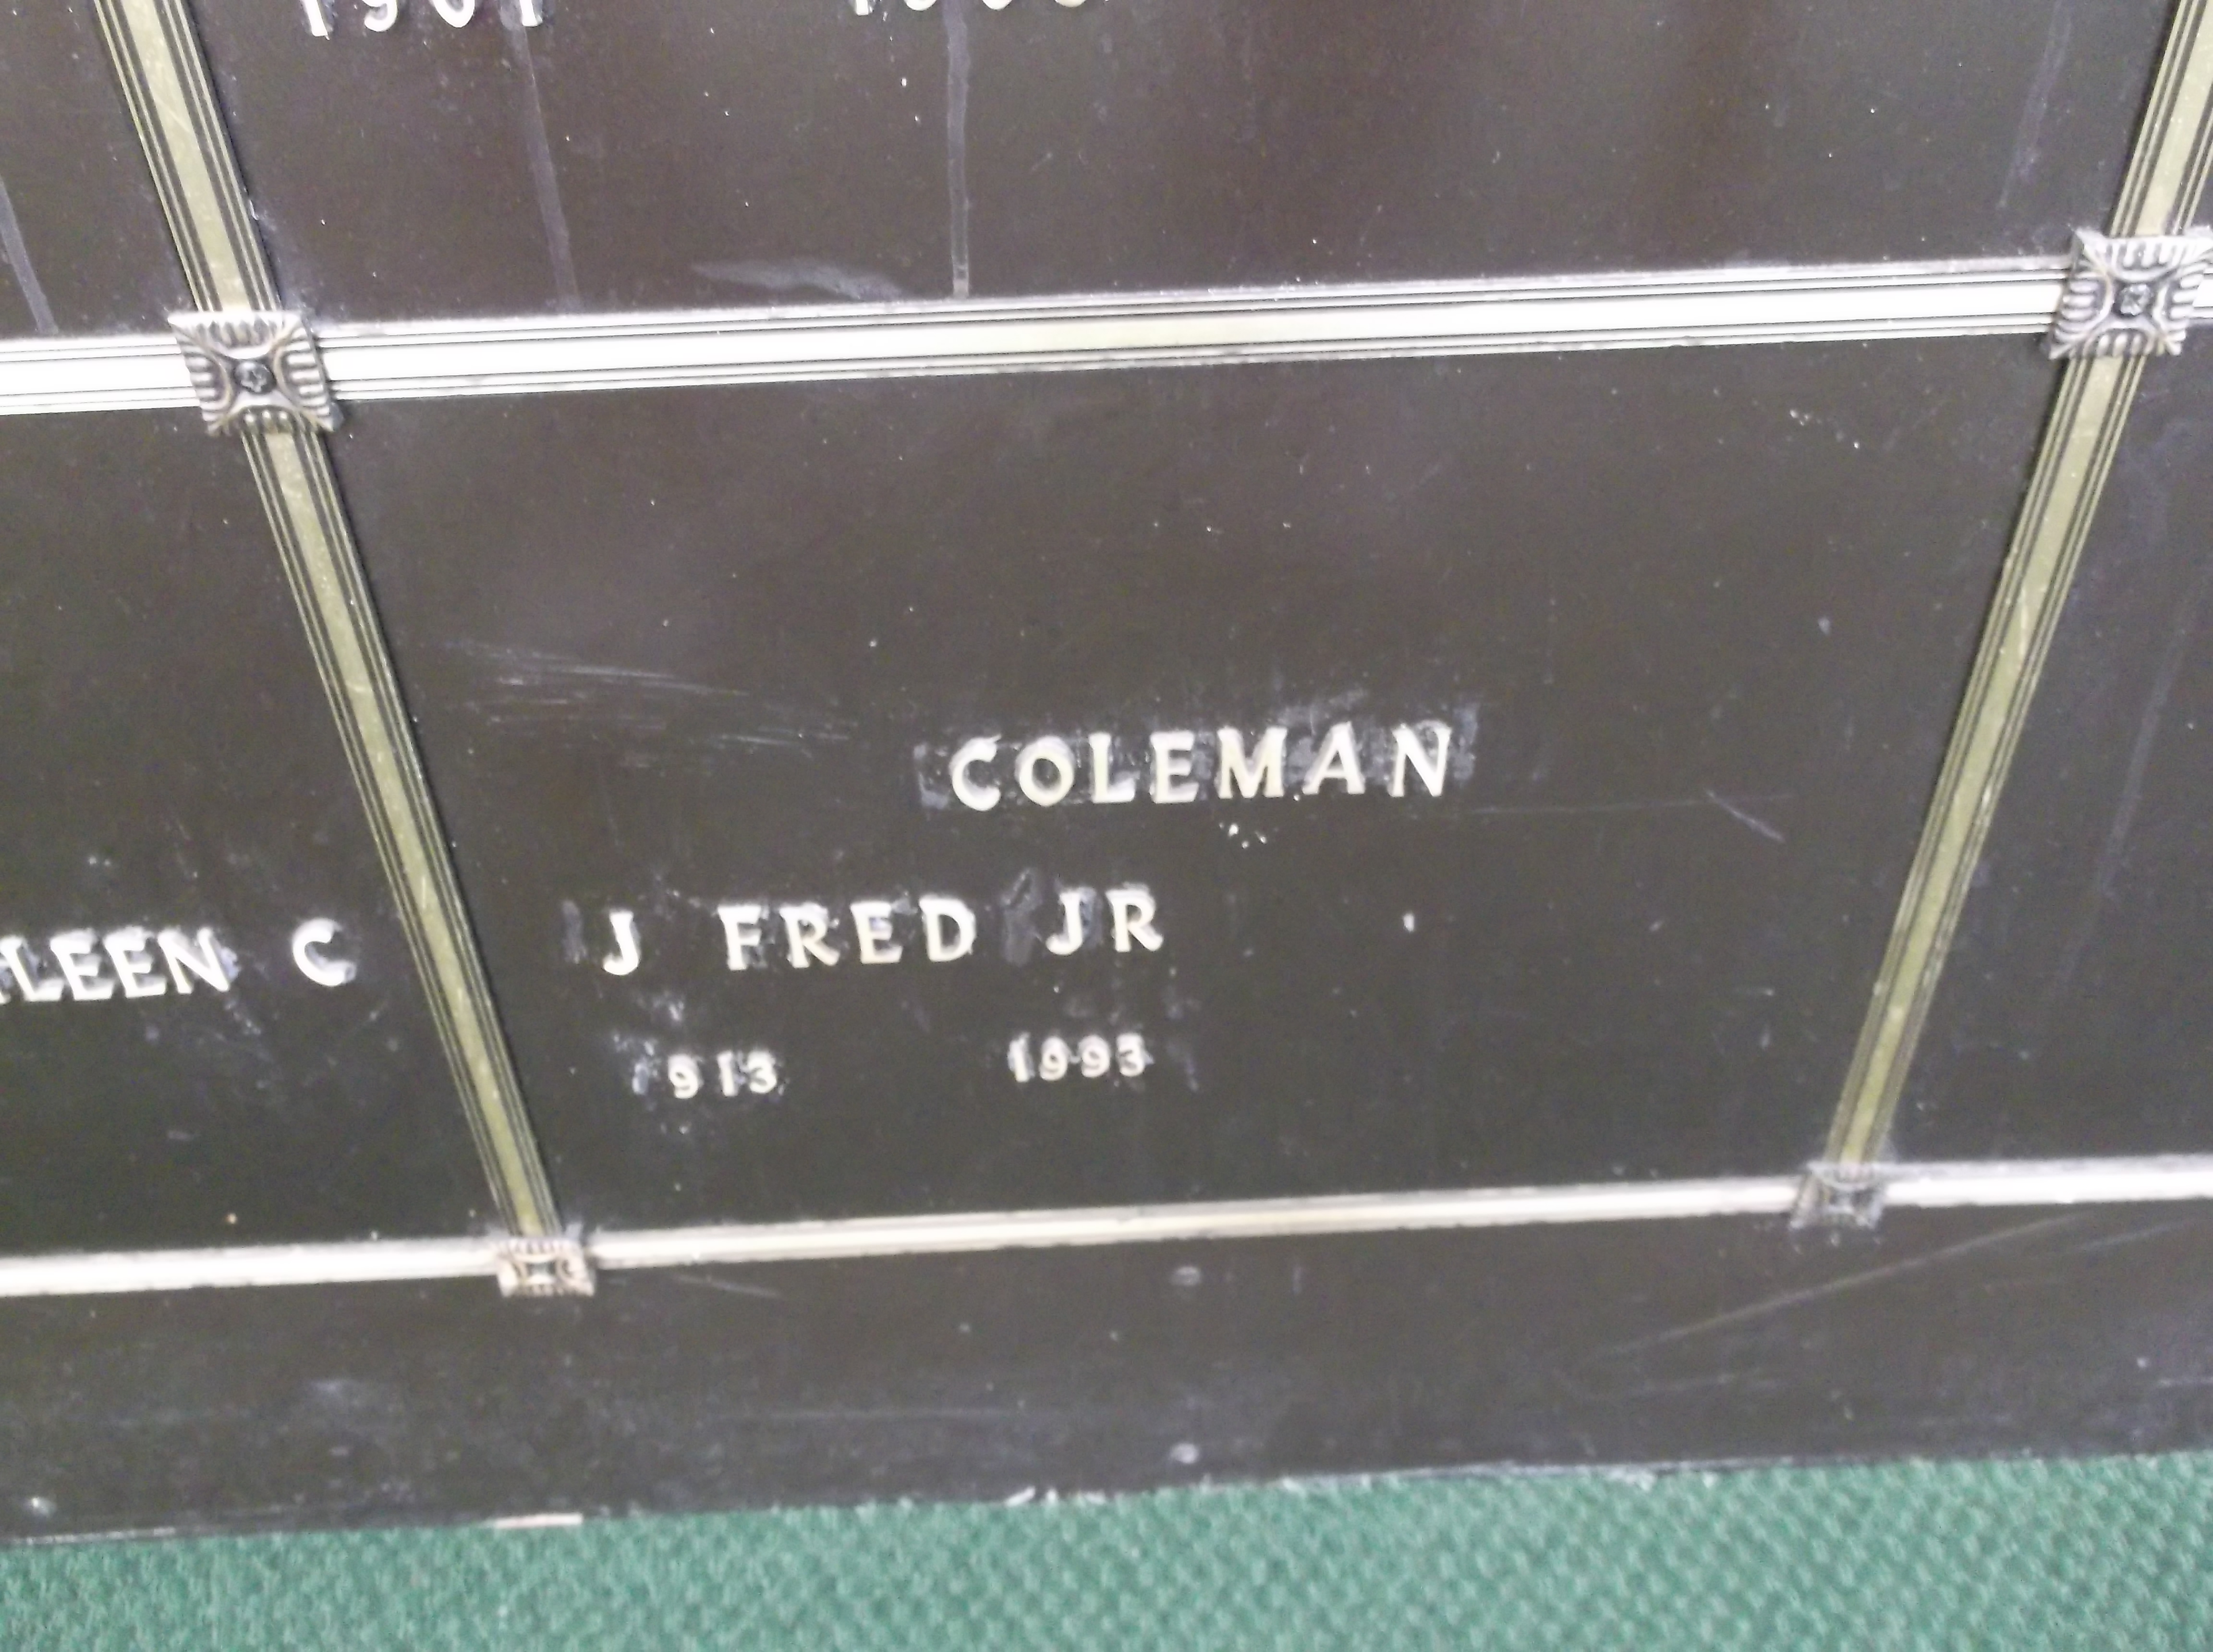 J Fred Coleman, Jr